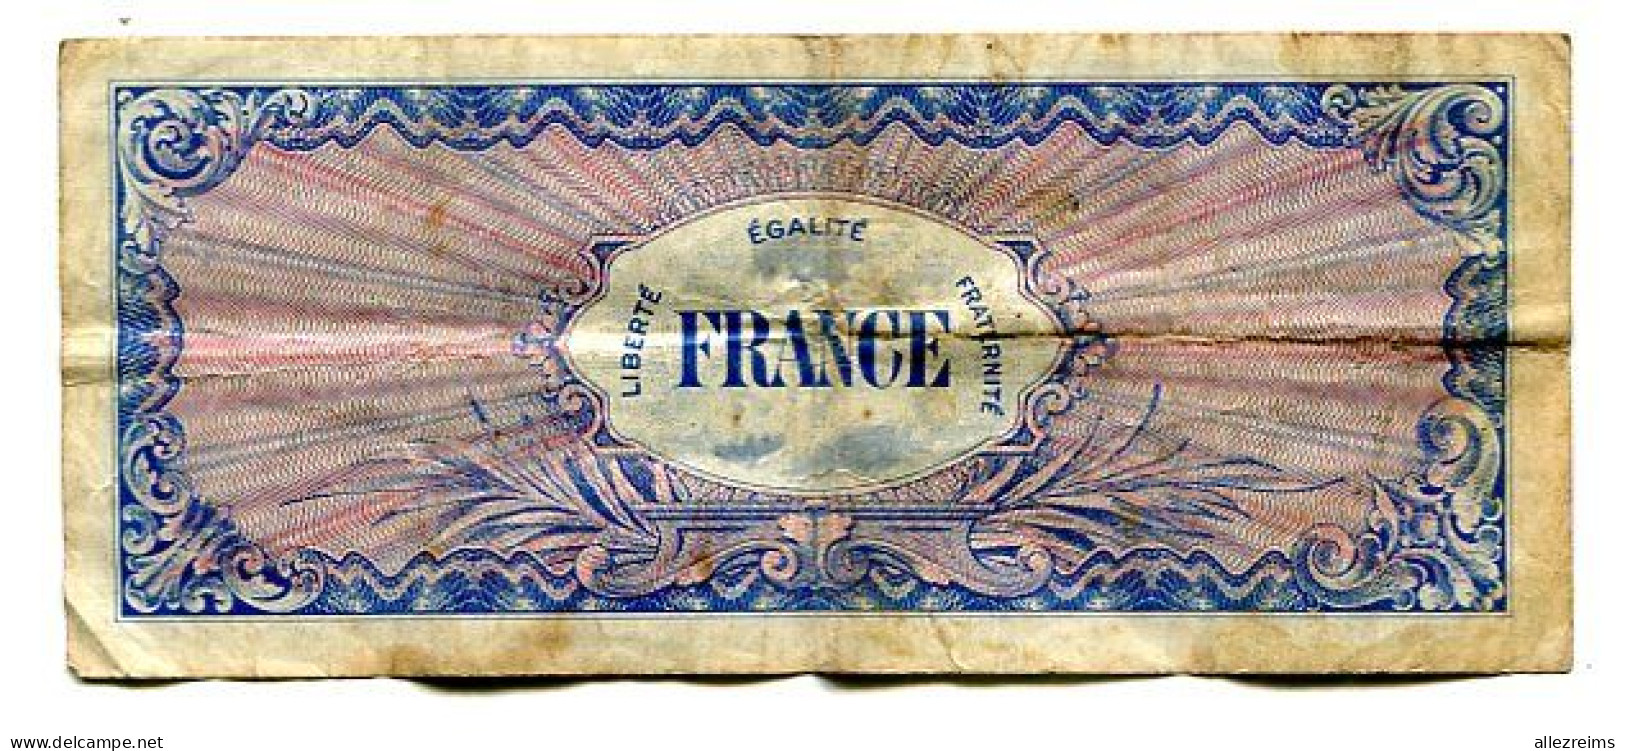 Billet De 100 F France  1944 Débarquement  VOIR ETAT  §§§ - 1944 Vlag/Frankrijk